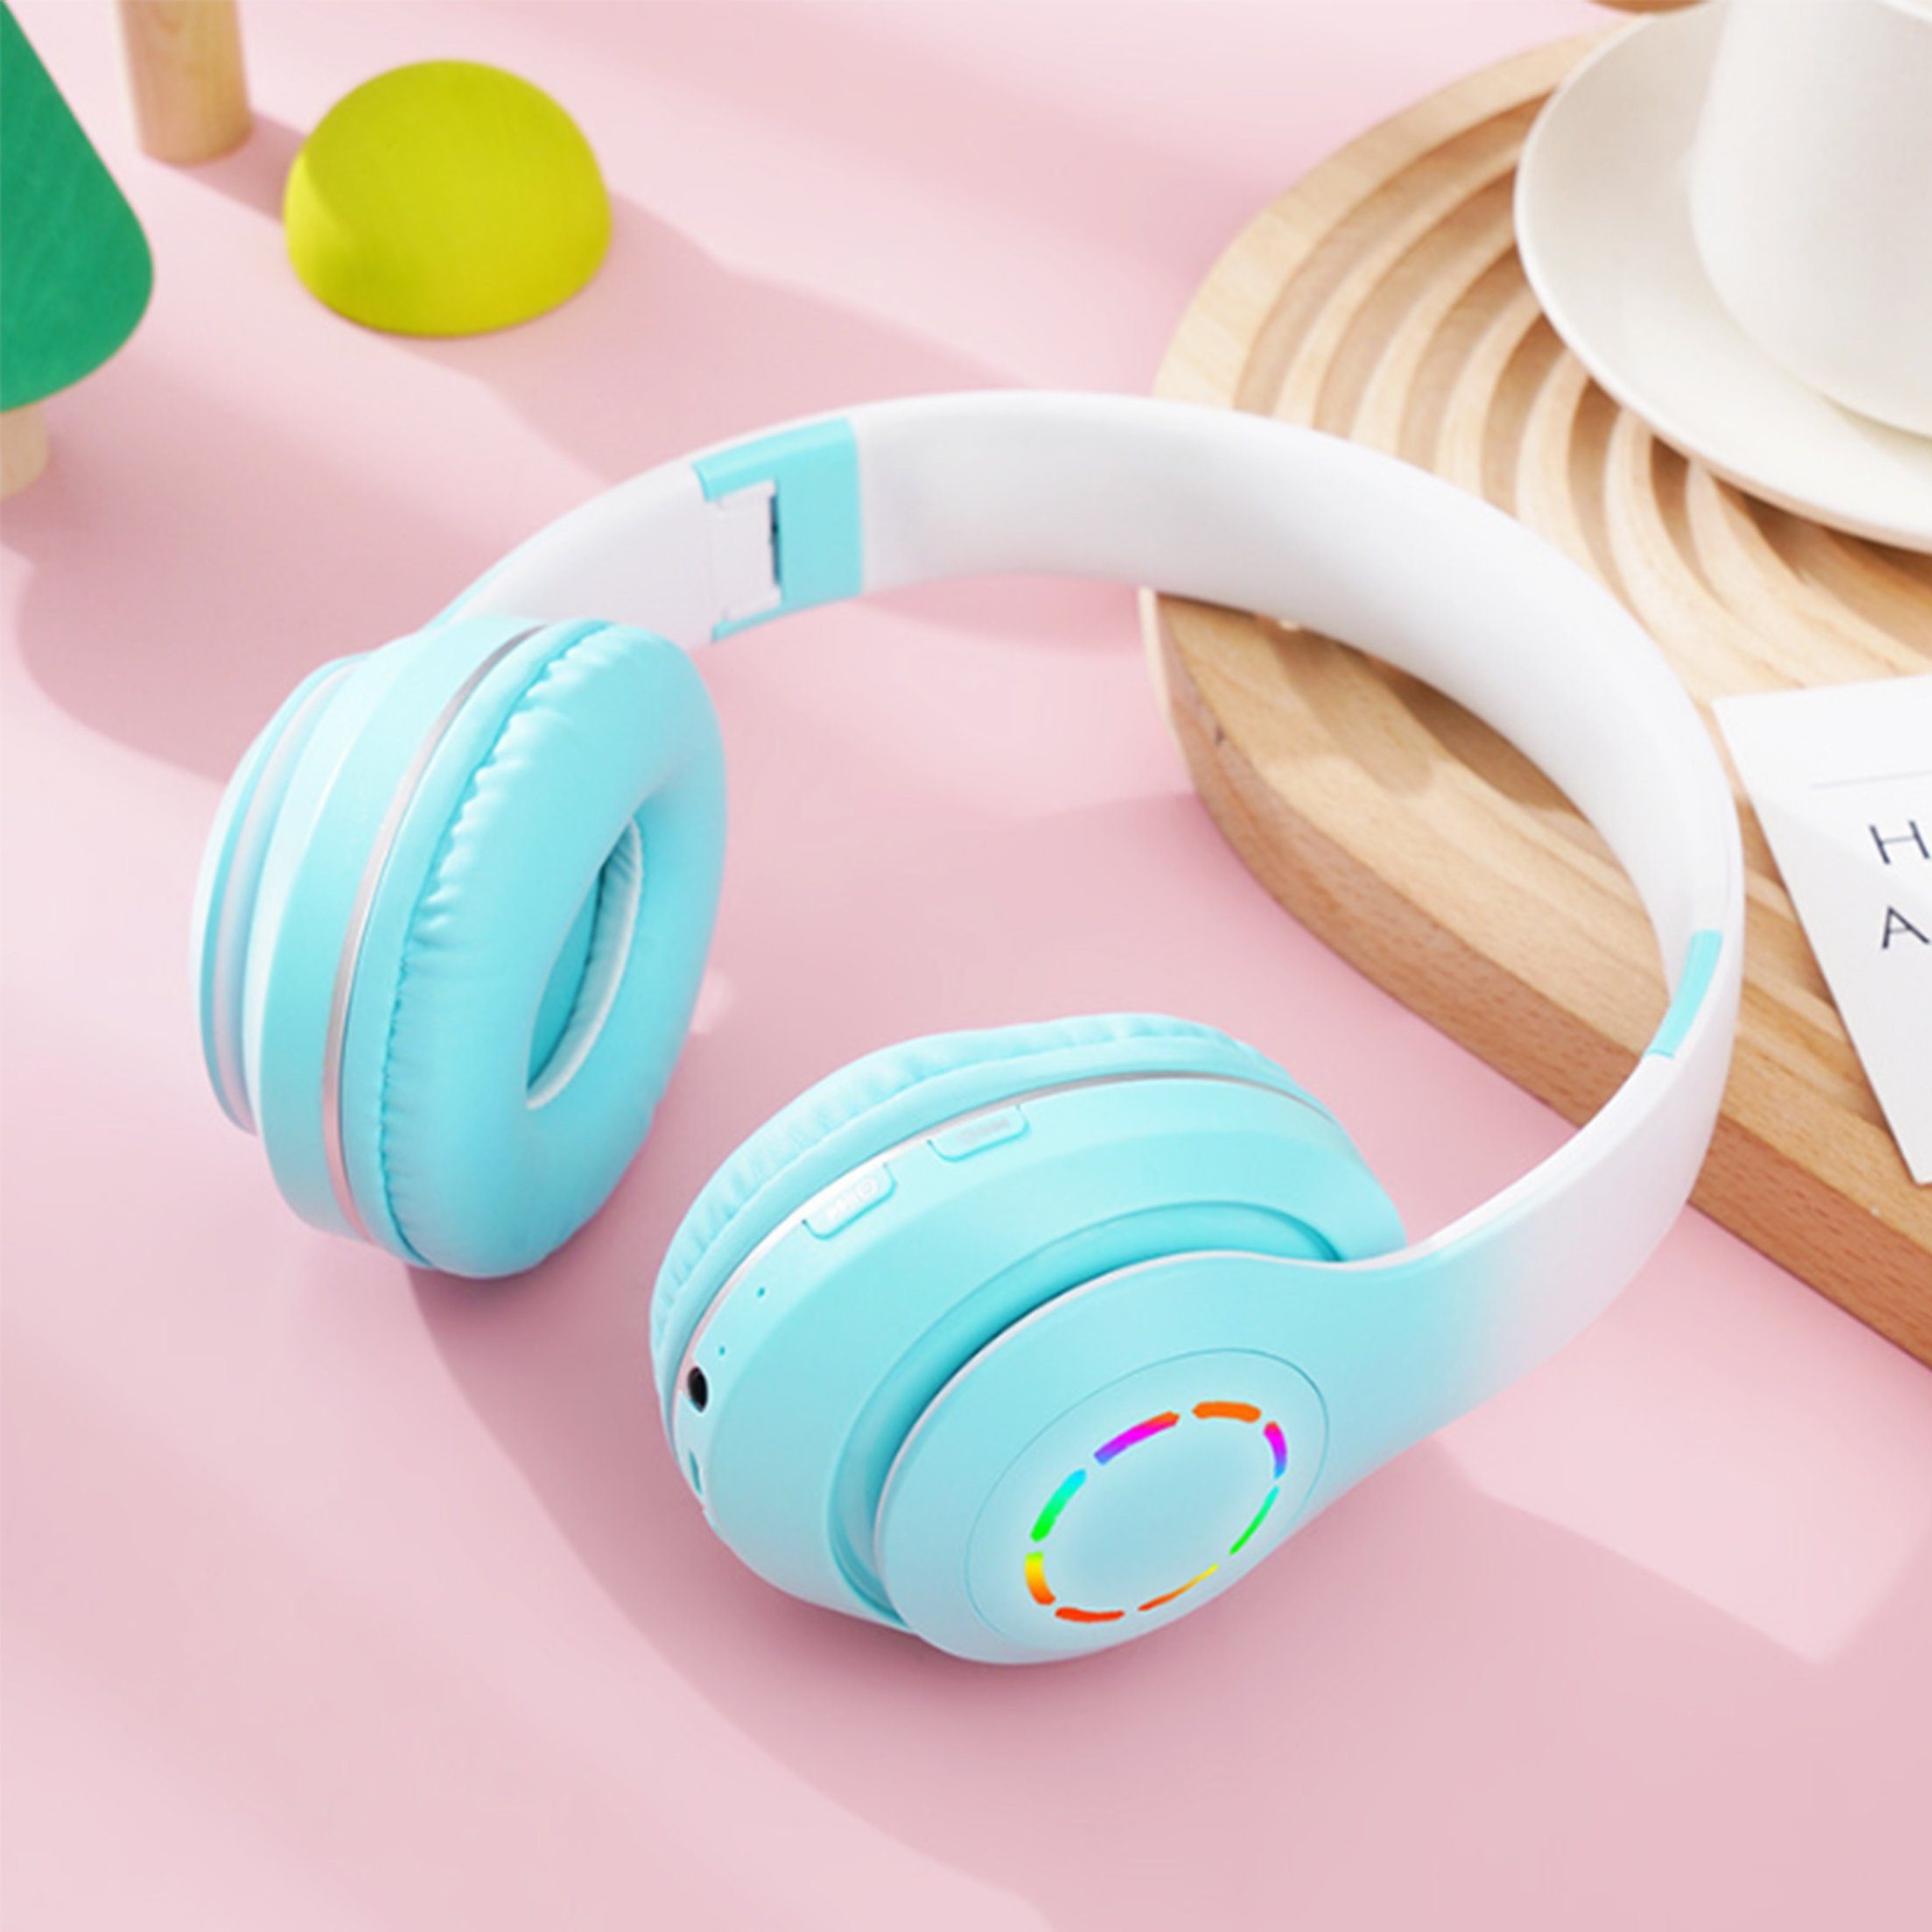 Diida Kopfhörer,Bluetooth-Kopfhörer,Over Ear Kabelloses Headset Funk-Kopfhörer Farbverlauf Grün | Funkkopfhörer